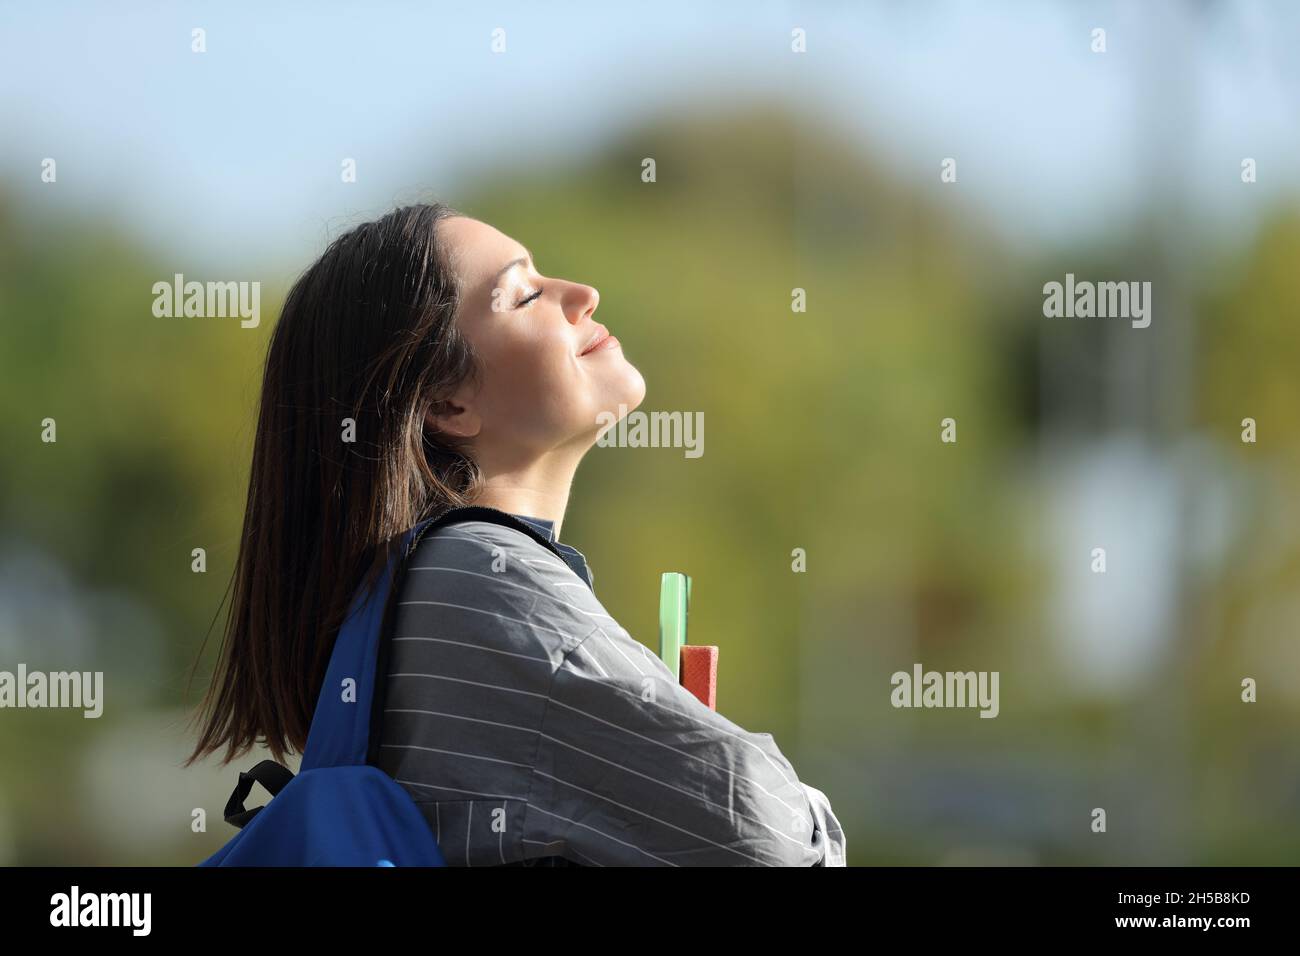 Vue latérale d'un étudiant heureux respirant de l'air frais dans un campus Banque D'Images